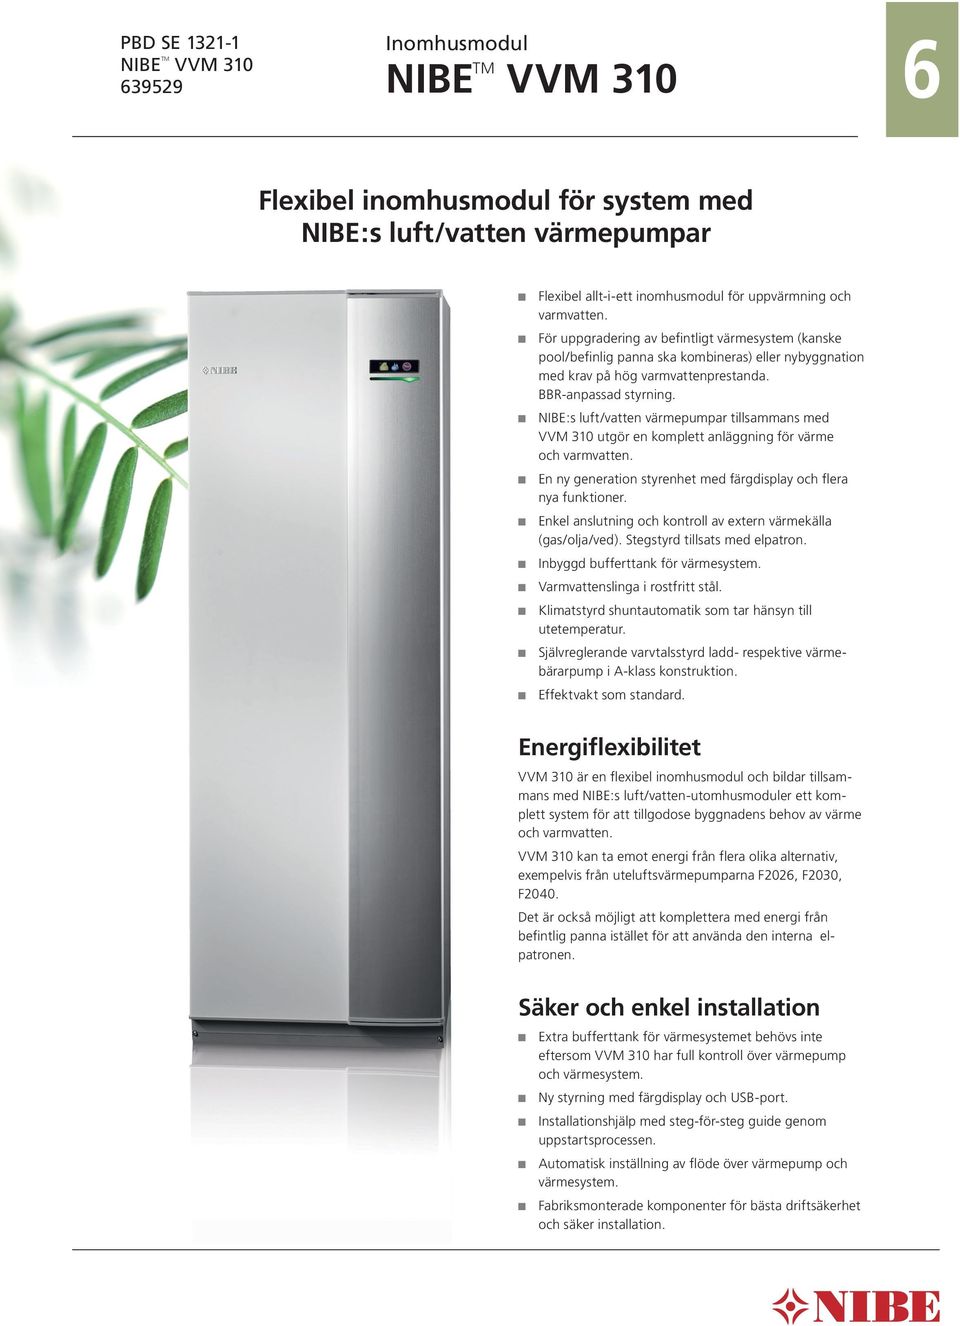 NIBE:s luft/vatten värmepumpar tillsammans med VVM 310 utgör en komplett anläggning för värme och varmvatten. En ny generation styrenhet med färgdisplay och flera nya funktioner.